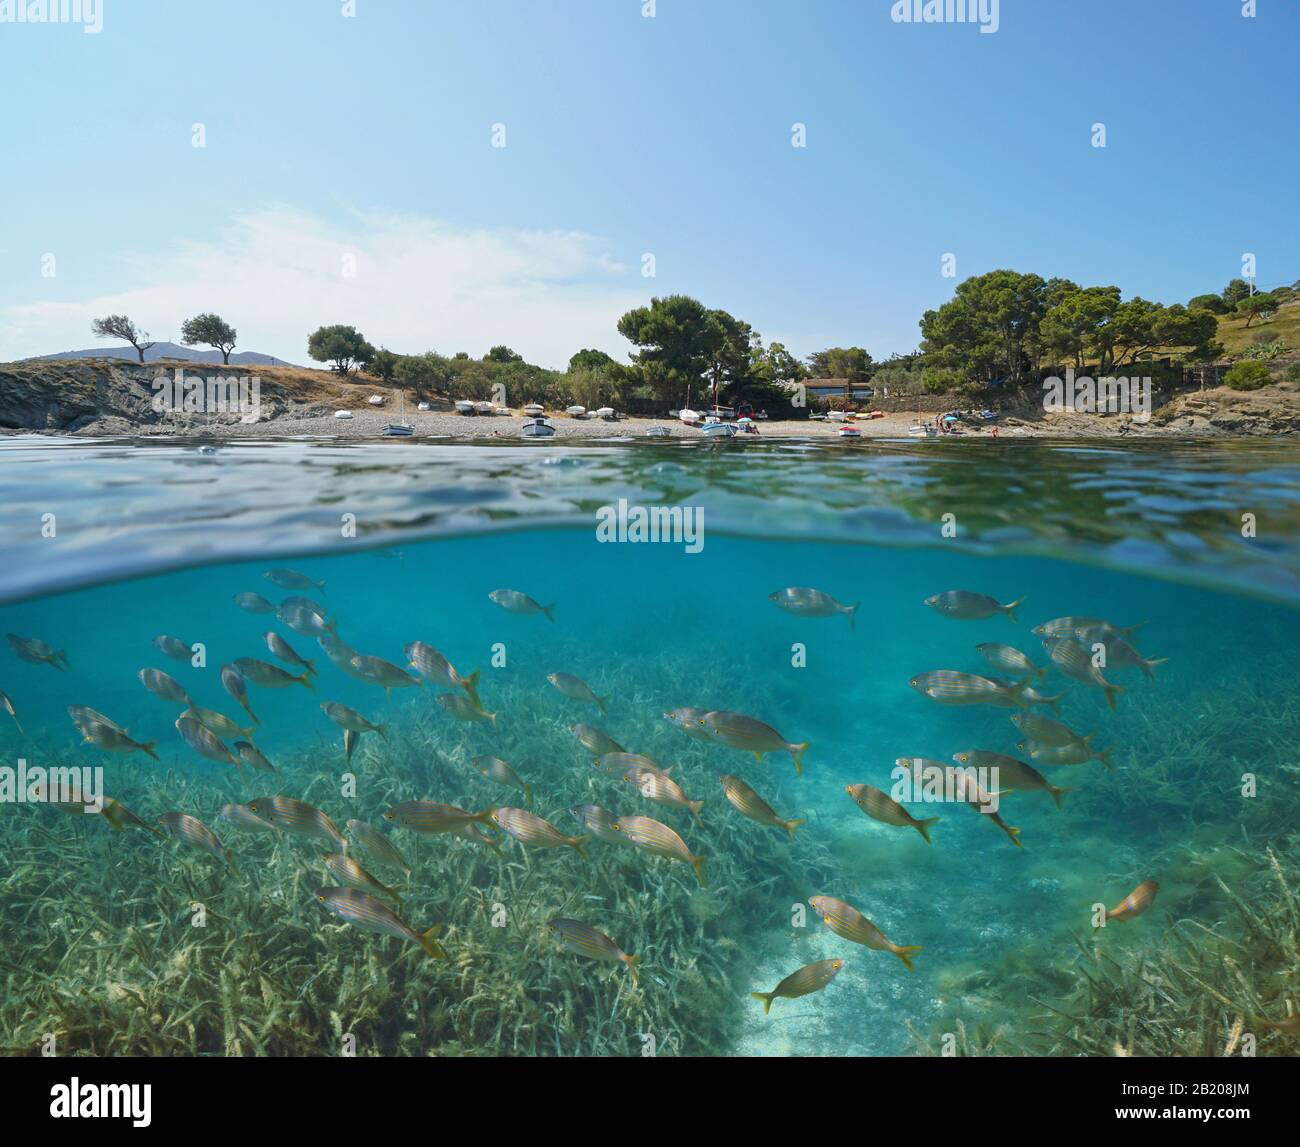 Espagne Méditerranée mer, école de poissons sous-marins et littoral de plage, vue partagée sous la surface de l'eau, Costa Brava, Port Lligat, Catalogne Banque D'Images